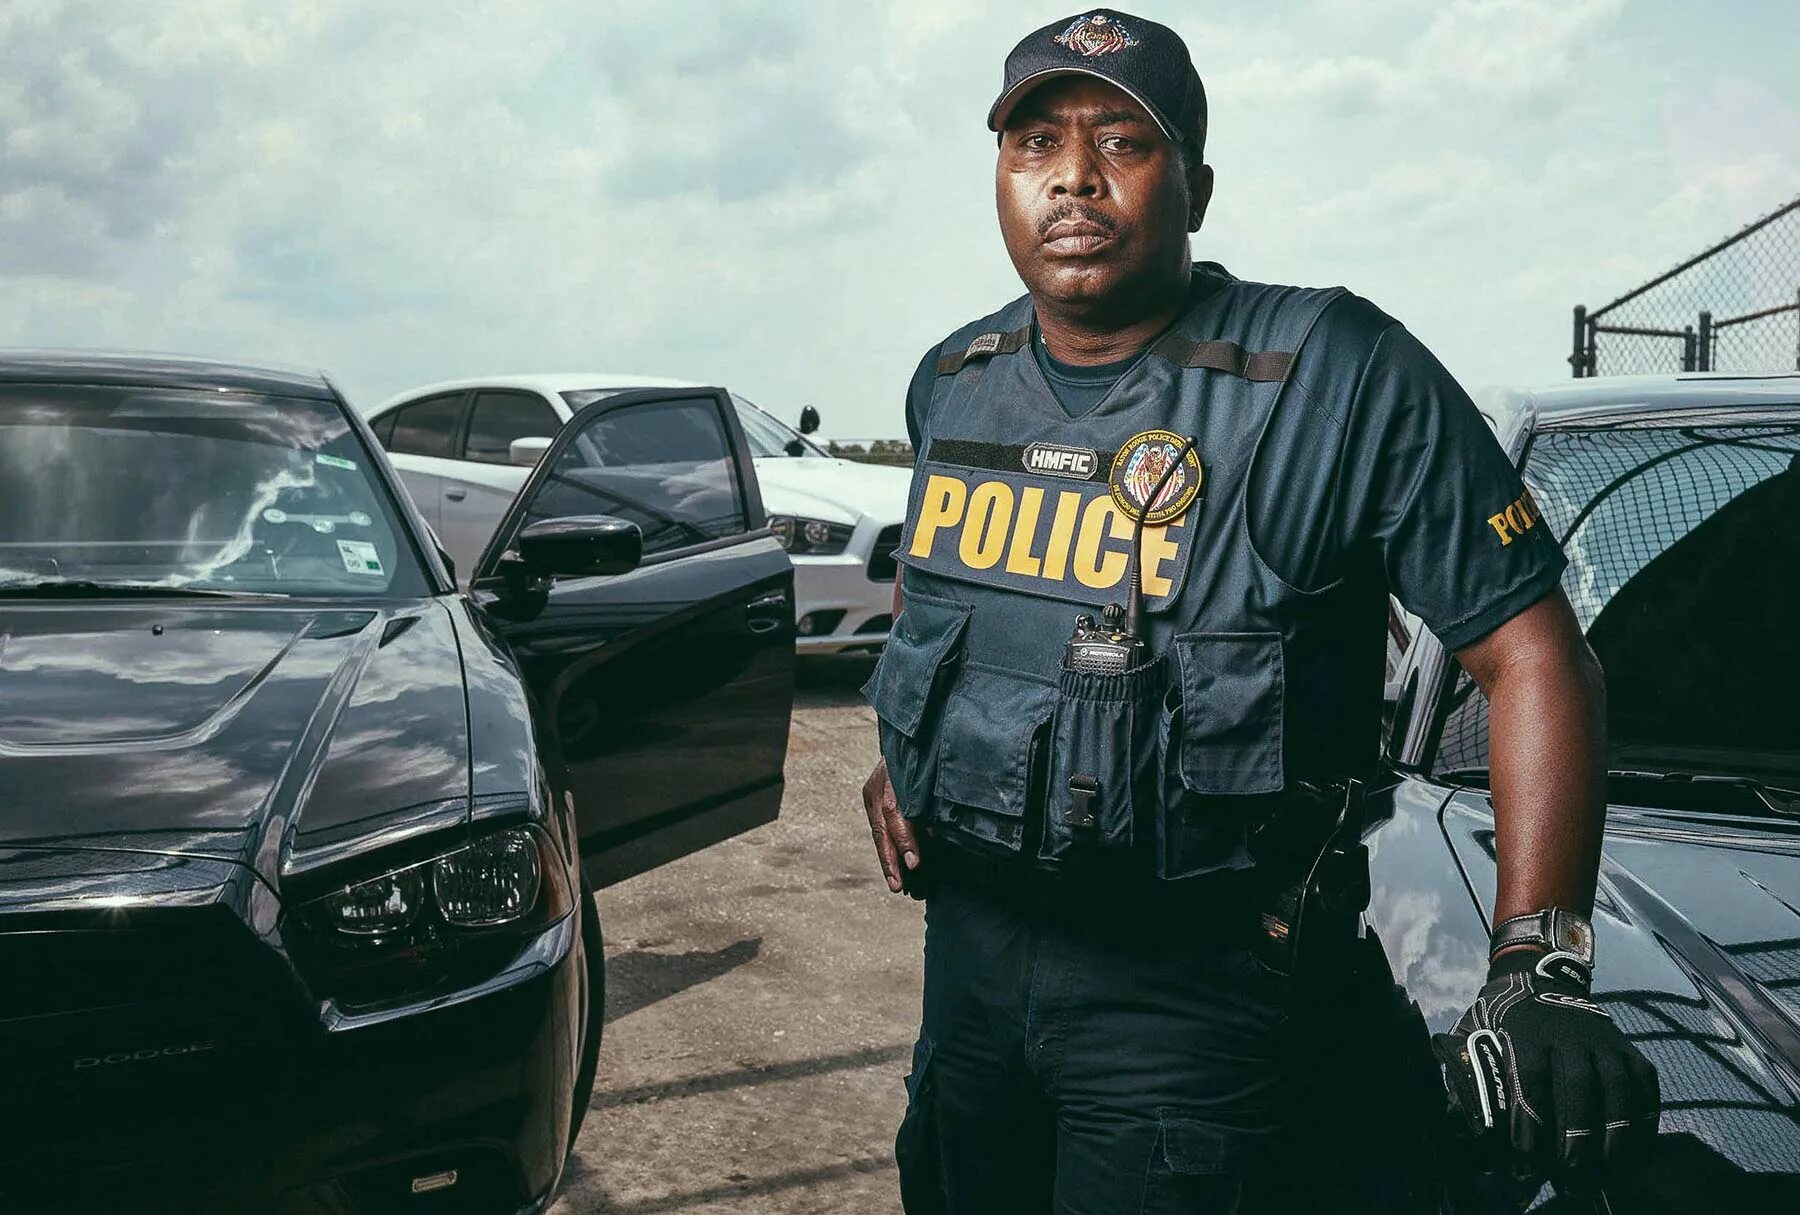 Чернокожий полицейский. Красивые темнокожие полицейские. Черные копы. Афроамериканский полицейский.